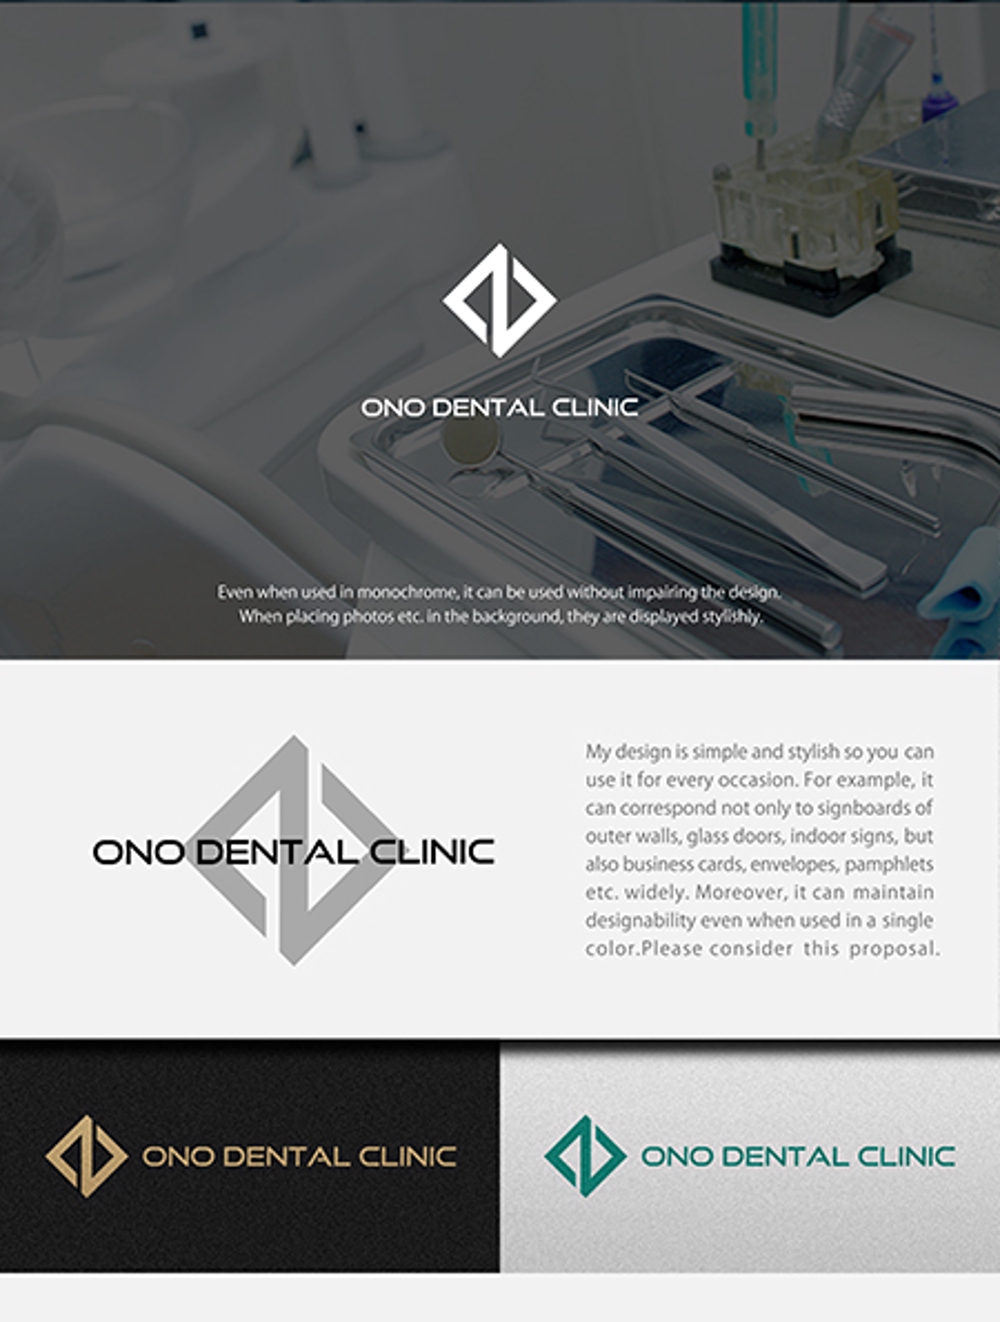 歯科医院「ONO Dental Clinic」のロゴ